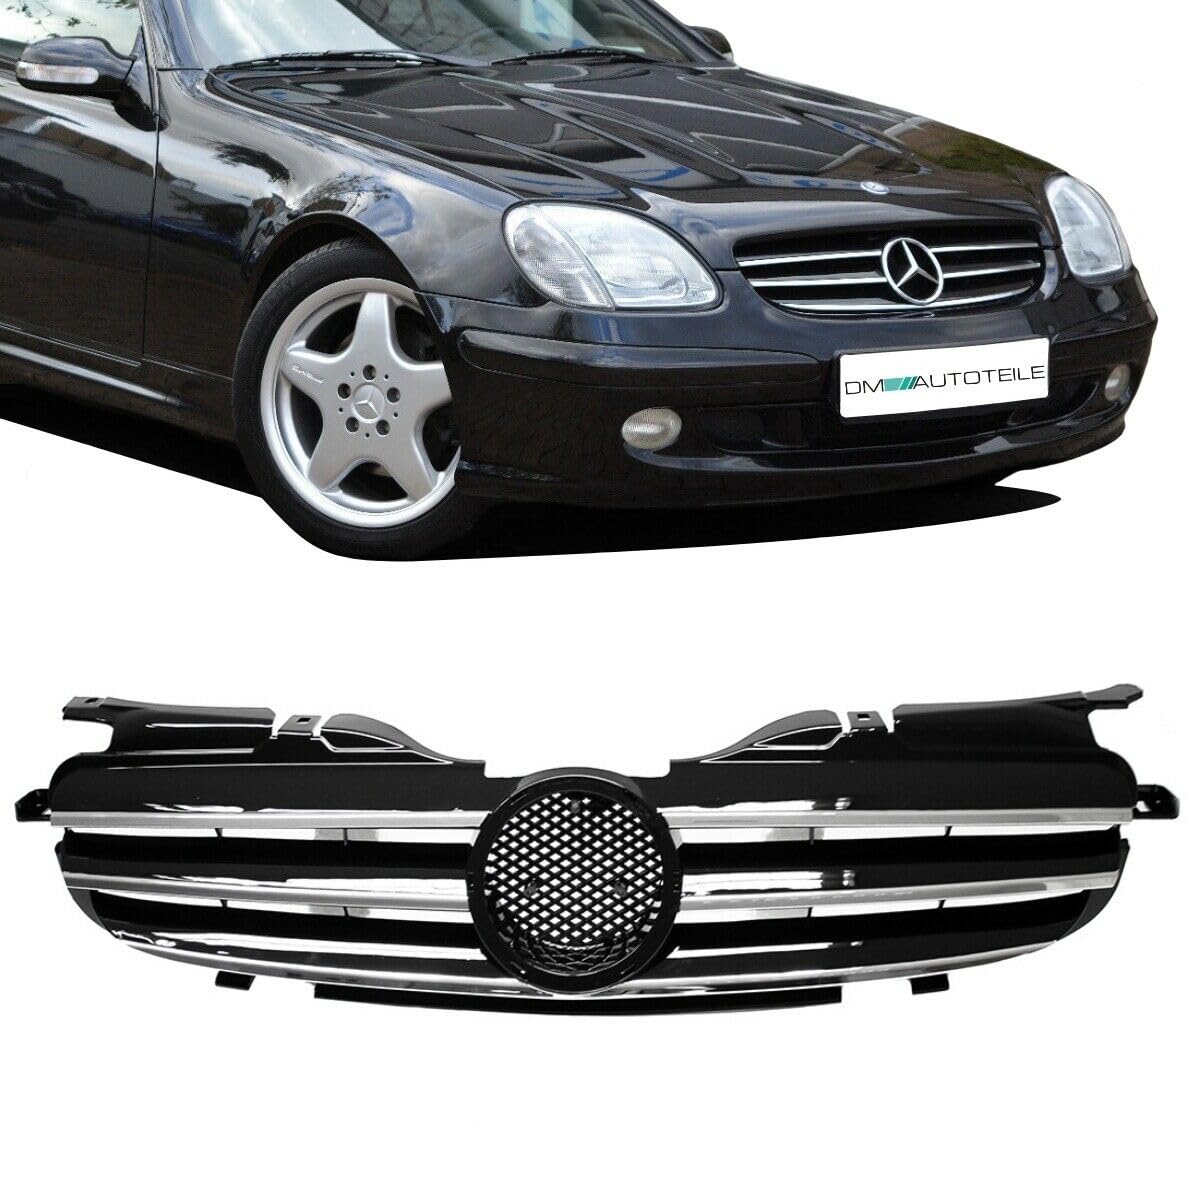 DM Autoteile Kühlergrill hochglanz Schwarz + Chromleiste passend für SLK R170 98-04 von DM Autoteile